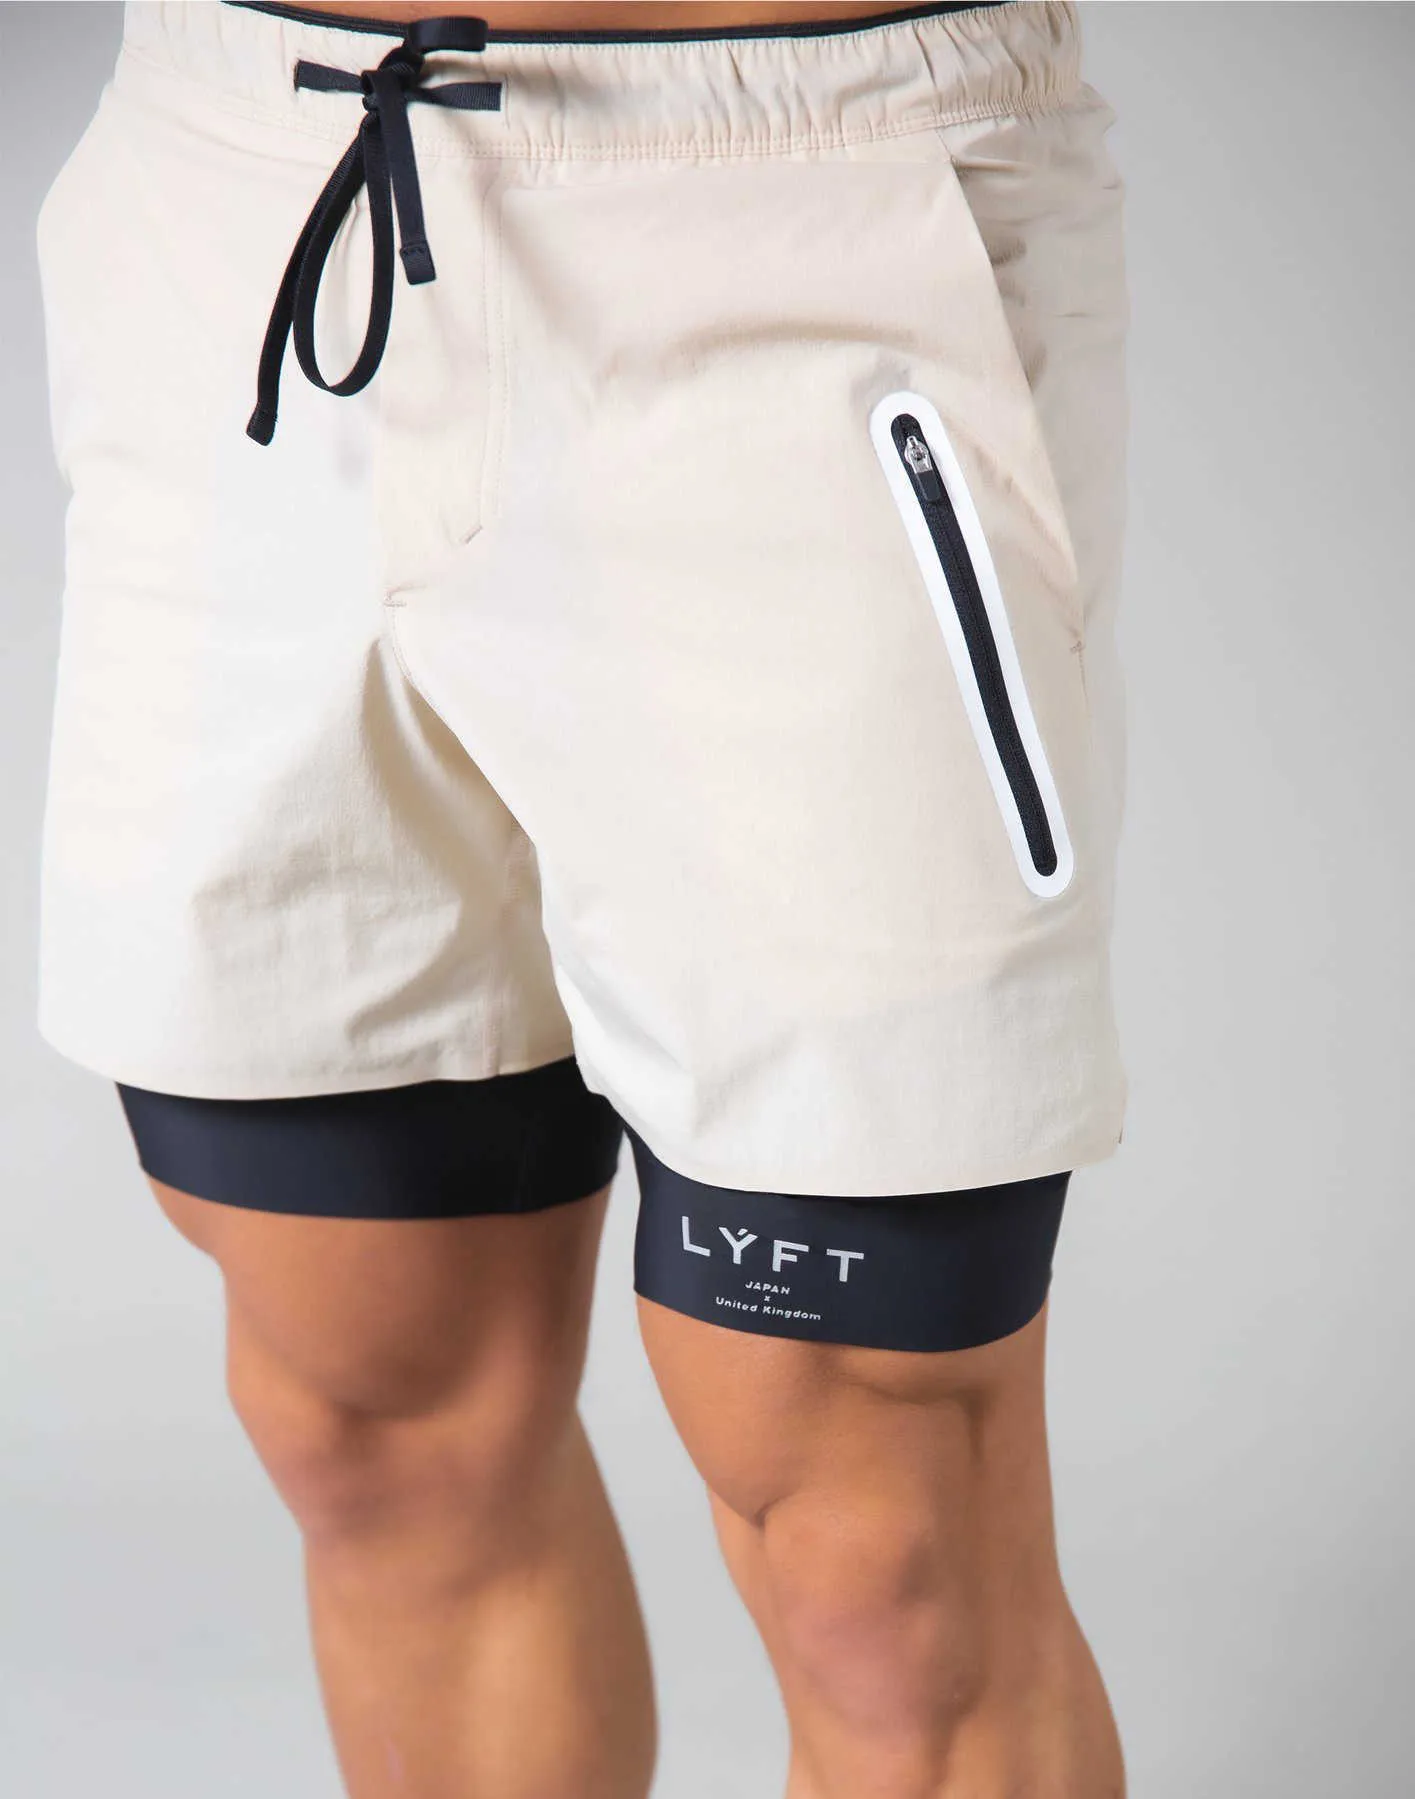 Pantalones deportivos LYFT para hombre, novedad de verano 2021, tendencia de fitness, entrenamiento multifuncional, transpirable, elástico, para ocio, deportes de bolsillo X0628